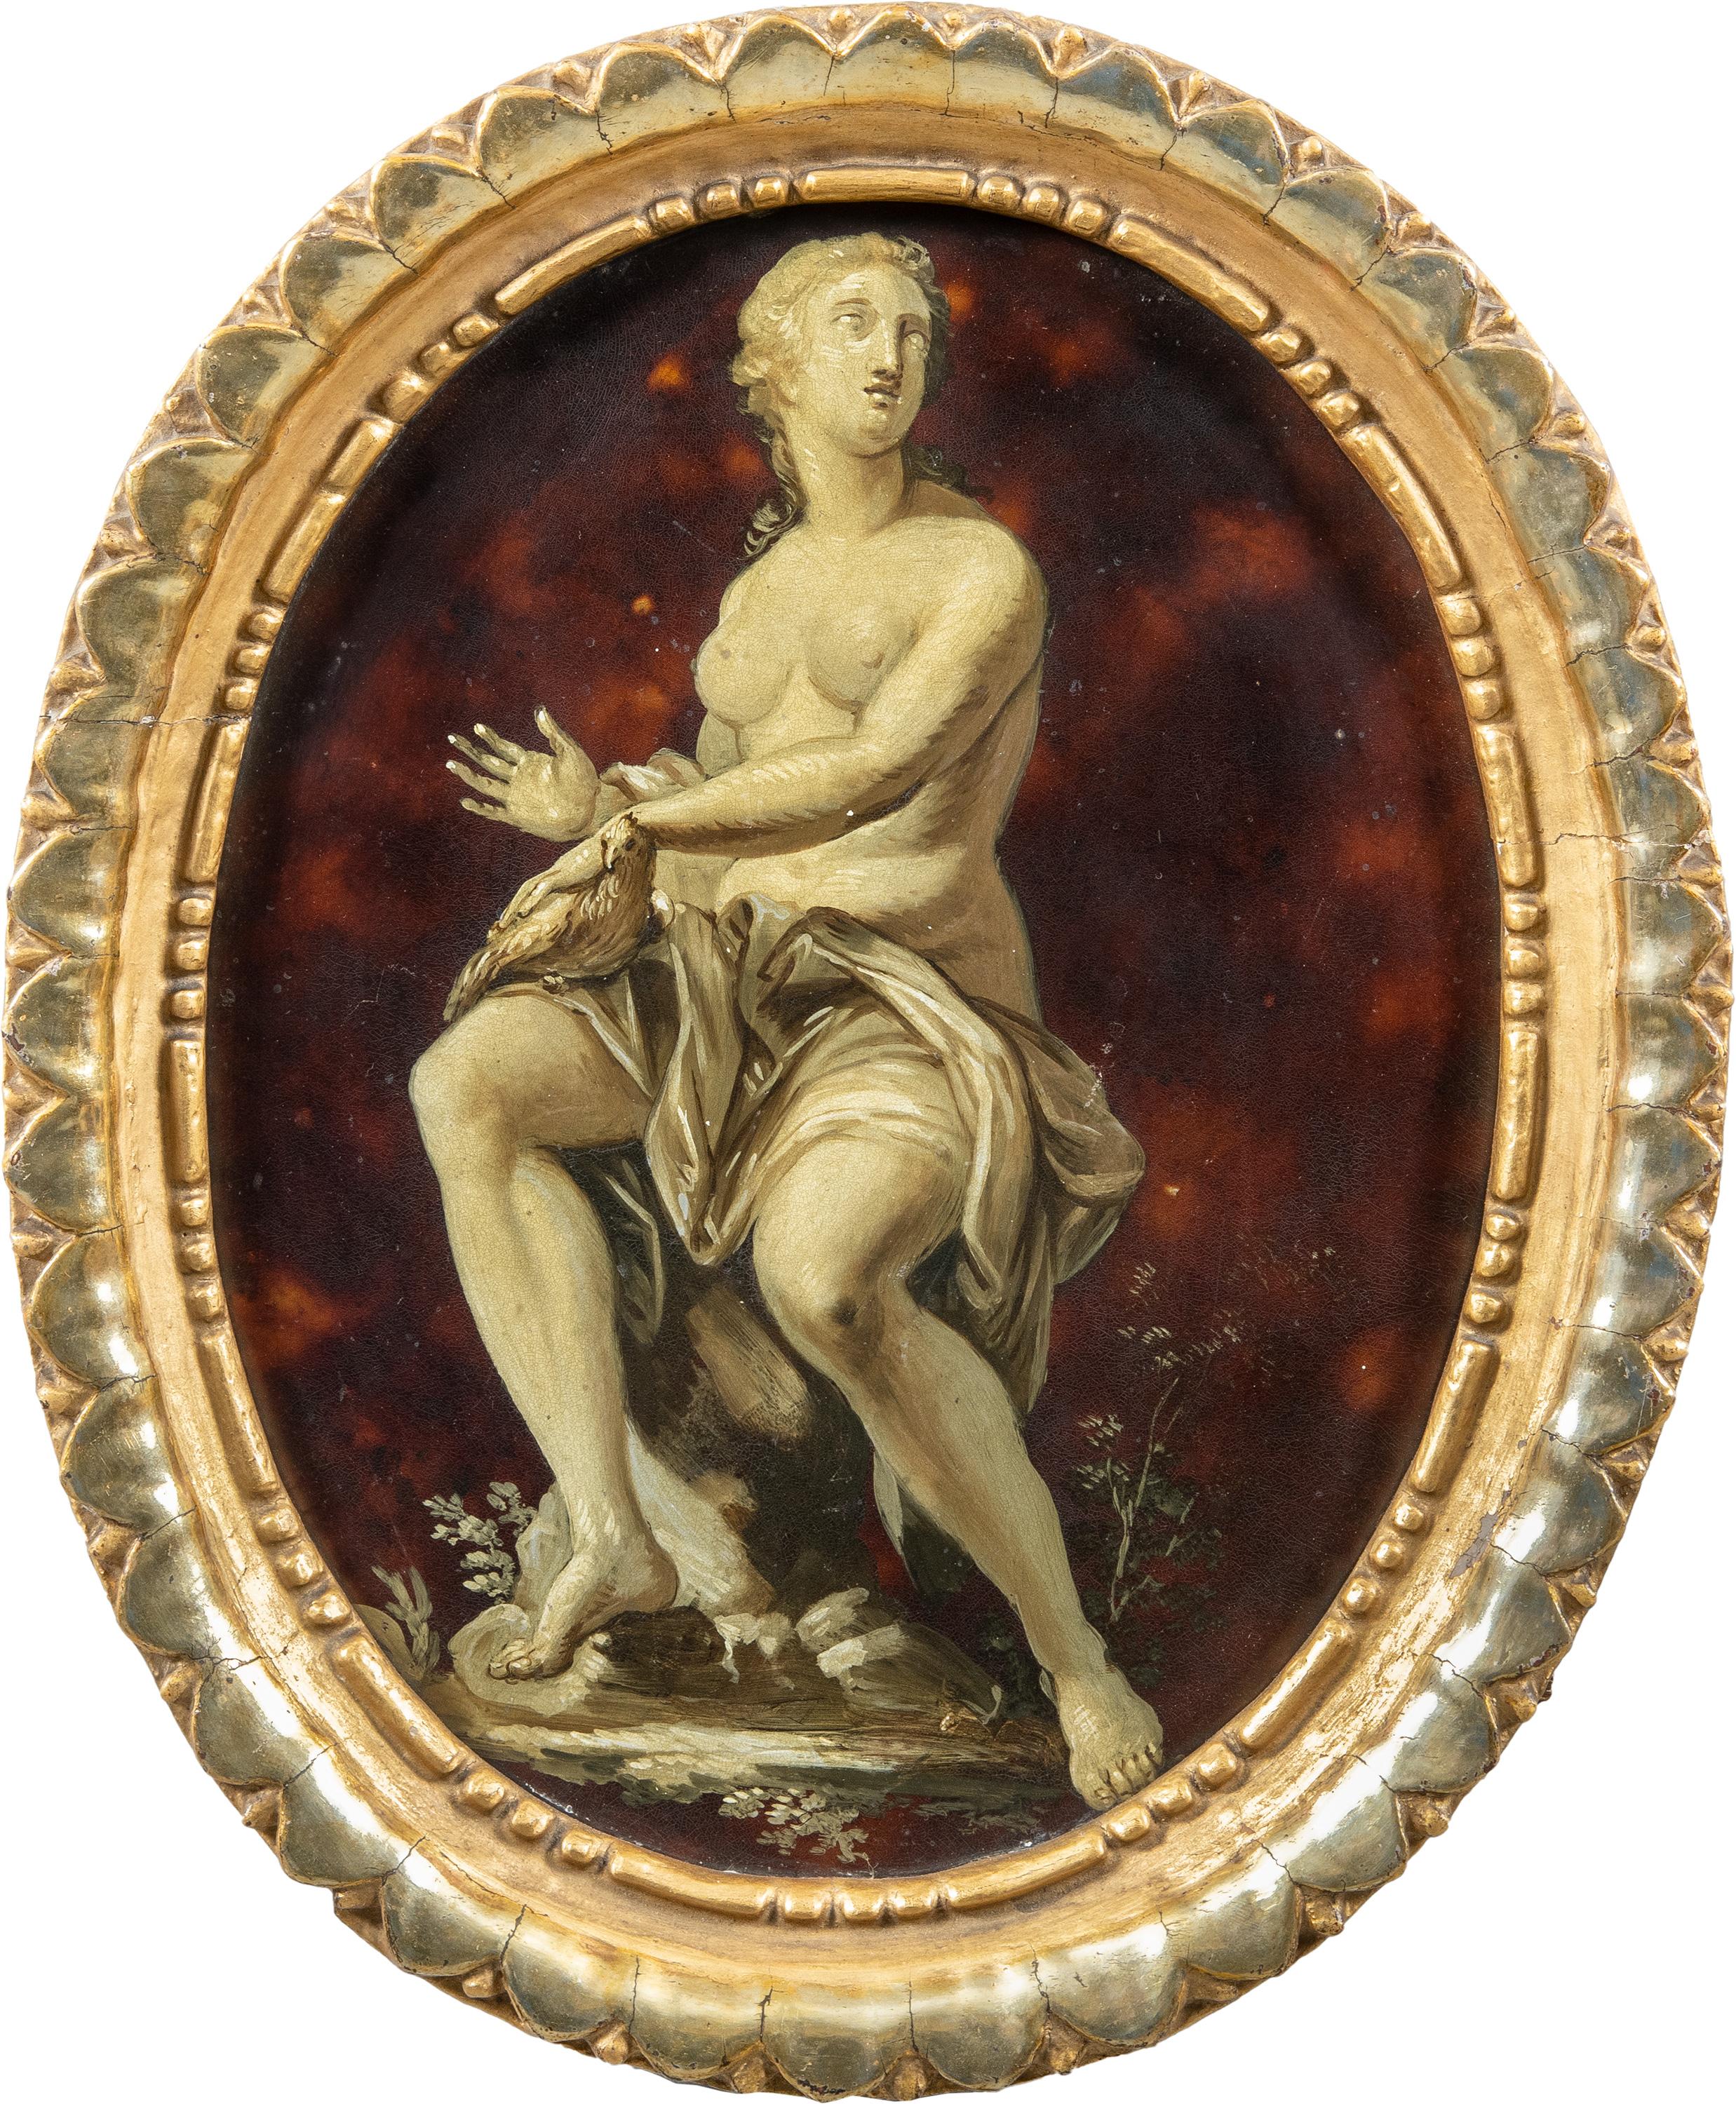 Italienischer Maler – Figurenmalerei des späten 18. Jahrhunderts – Allegorie des Friedens – Metall